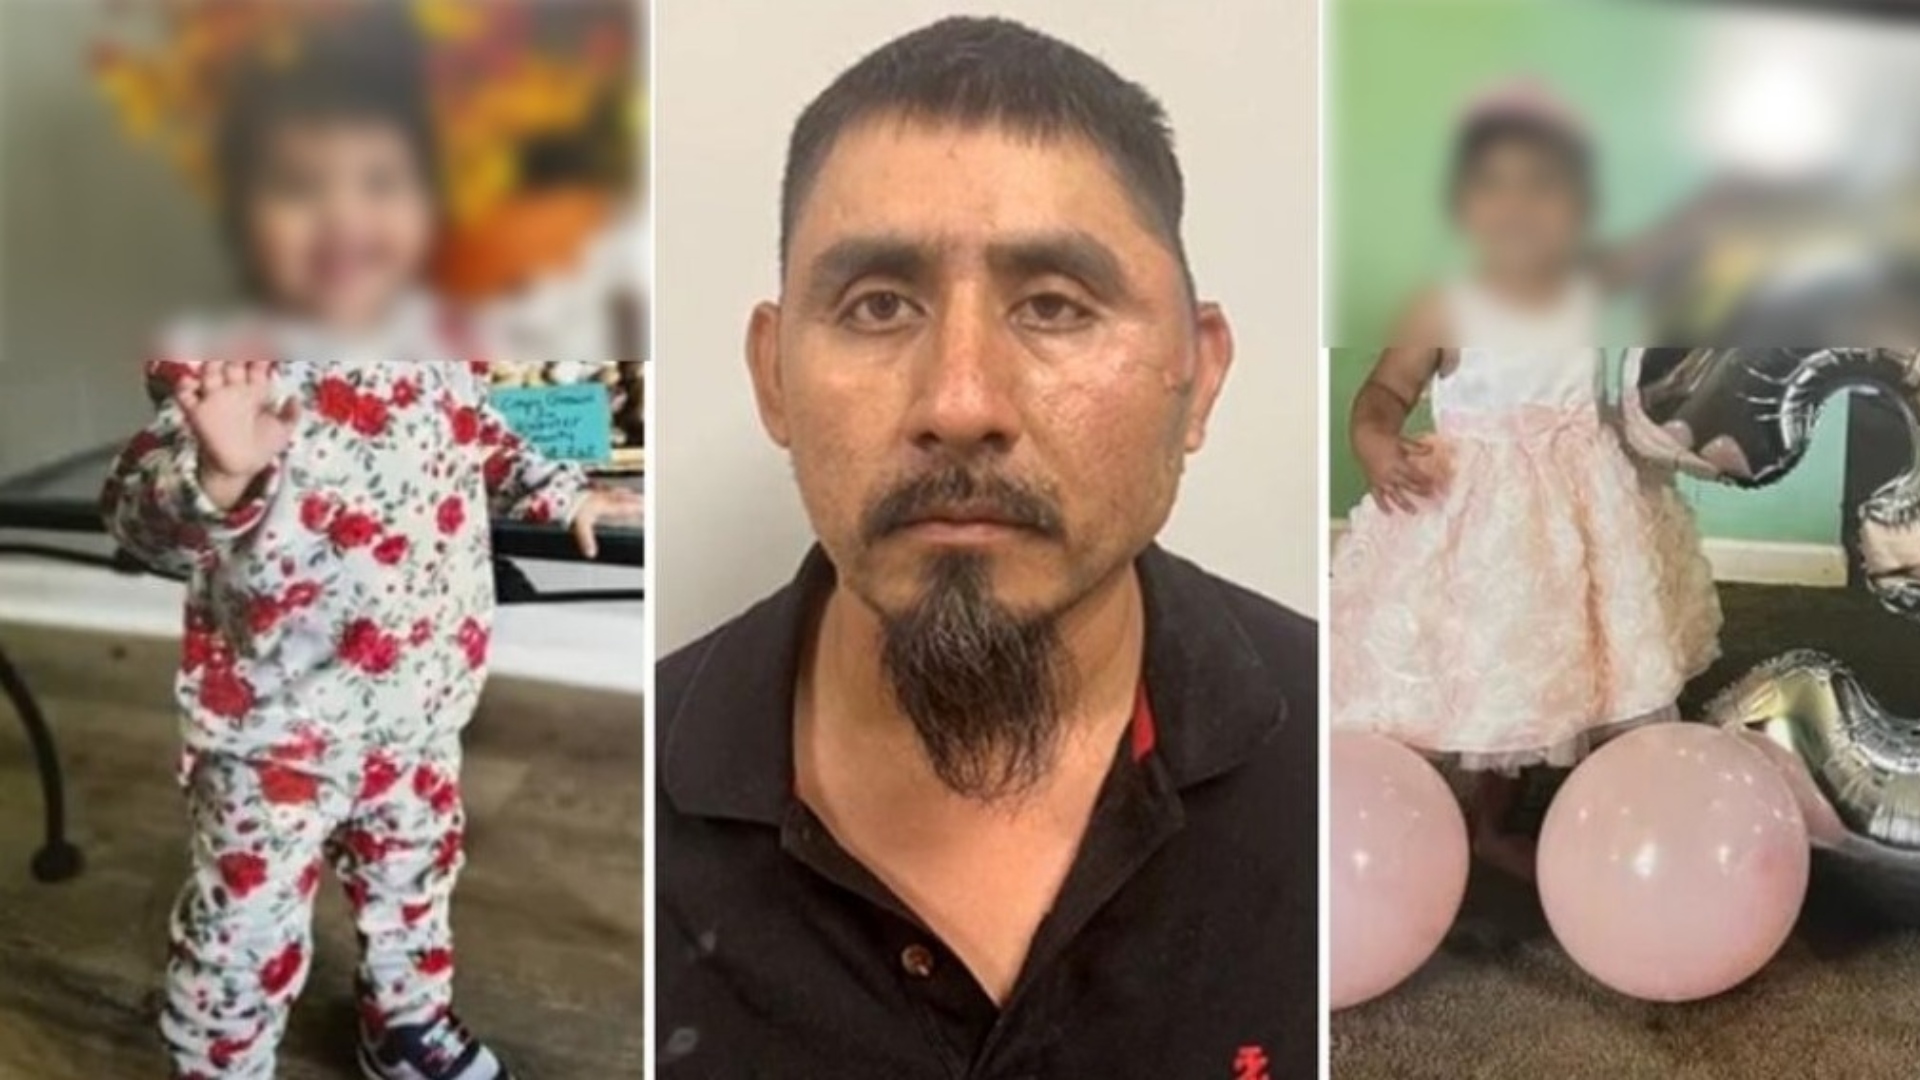 Estados Unidos, un hombre quemó vivas a sus dos hijas luego de una discusión con su esposa